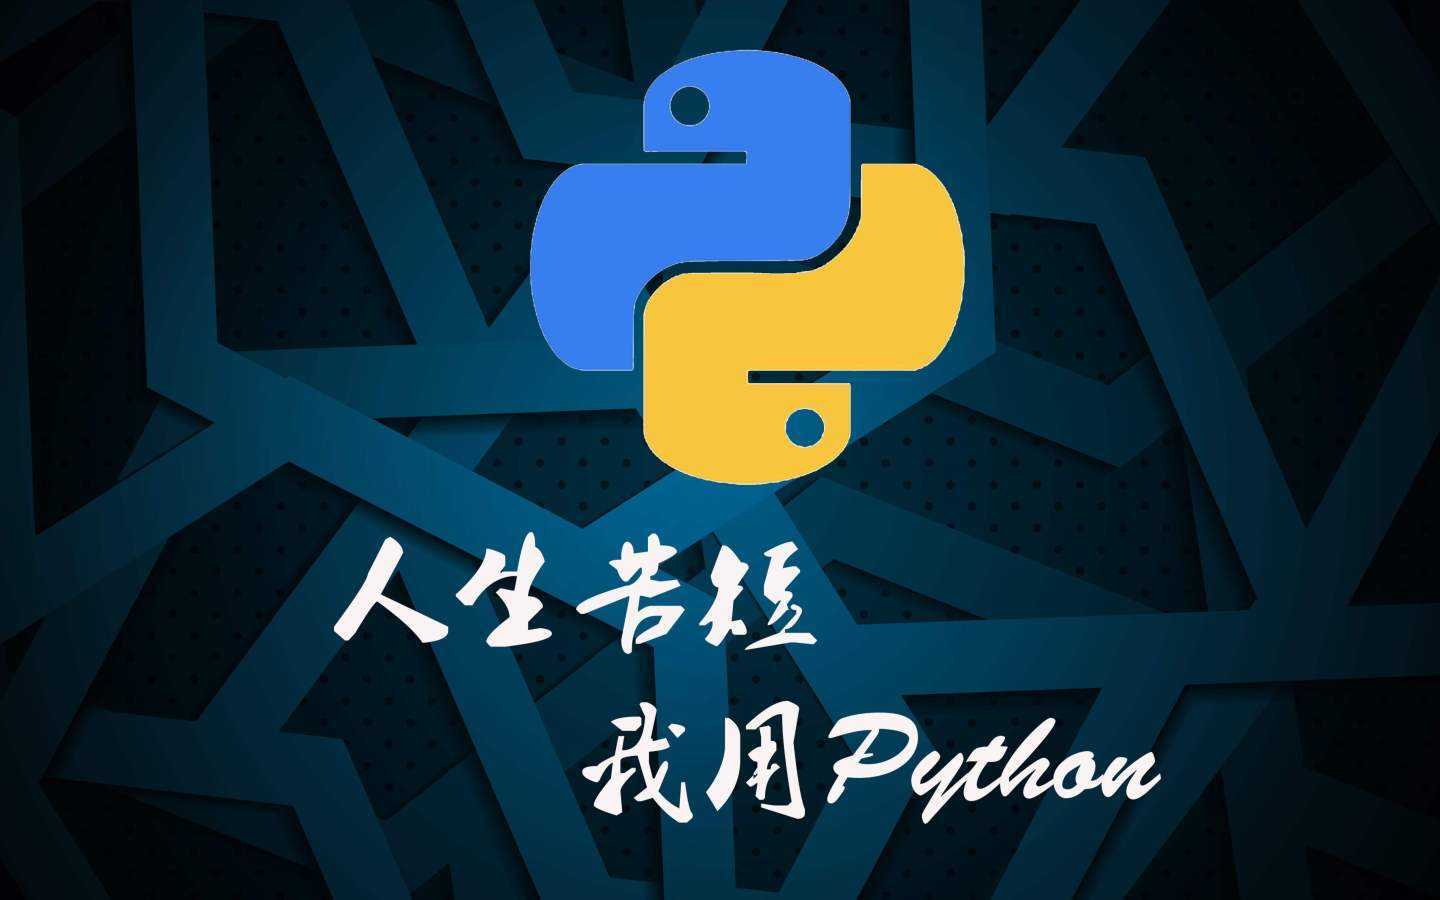 使用python实现一个文件搜索功能,类似于Everything功能